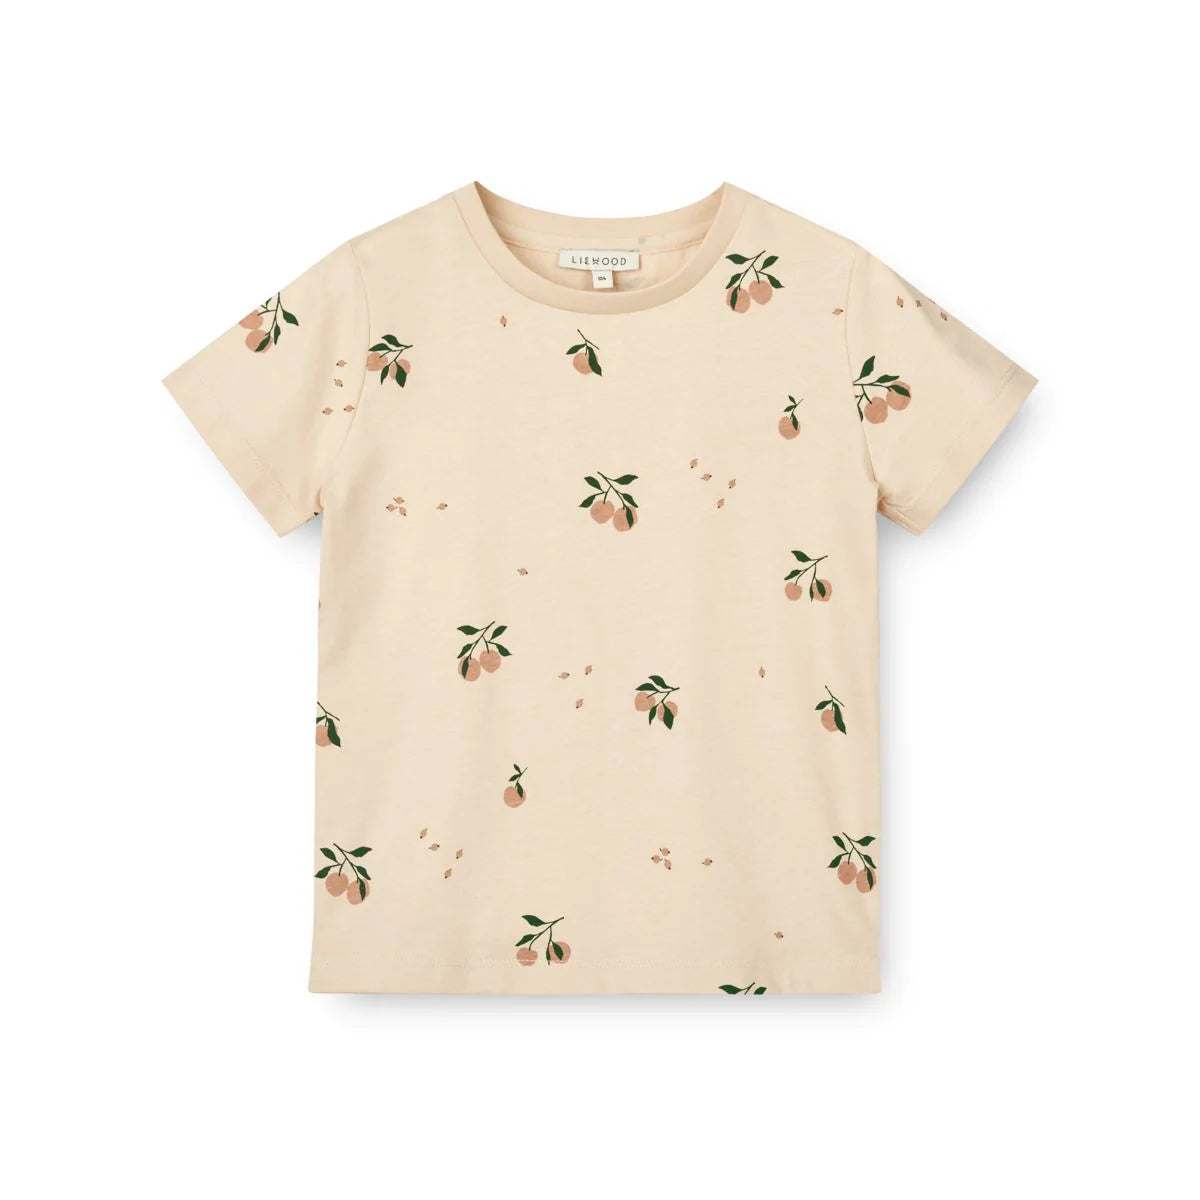 Das weiche und atmungsaktive Baby-Shirt Apia ist ein echter Klassiker im Kleiderschrank und ein unkomplizierter Alltagsstyle für dein Baby. 